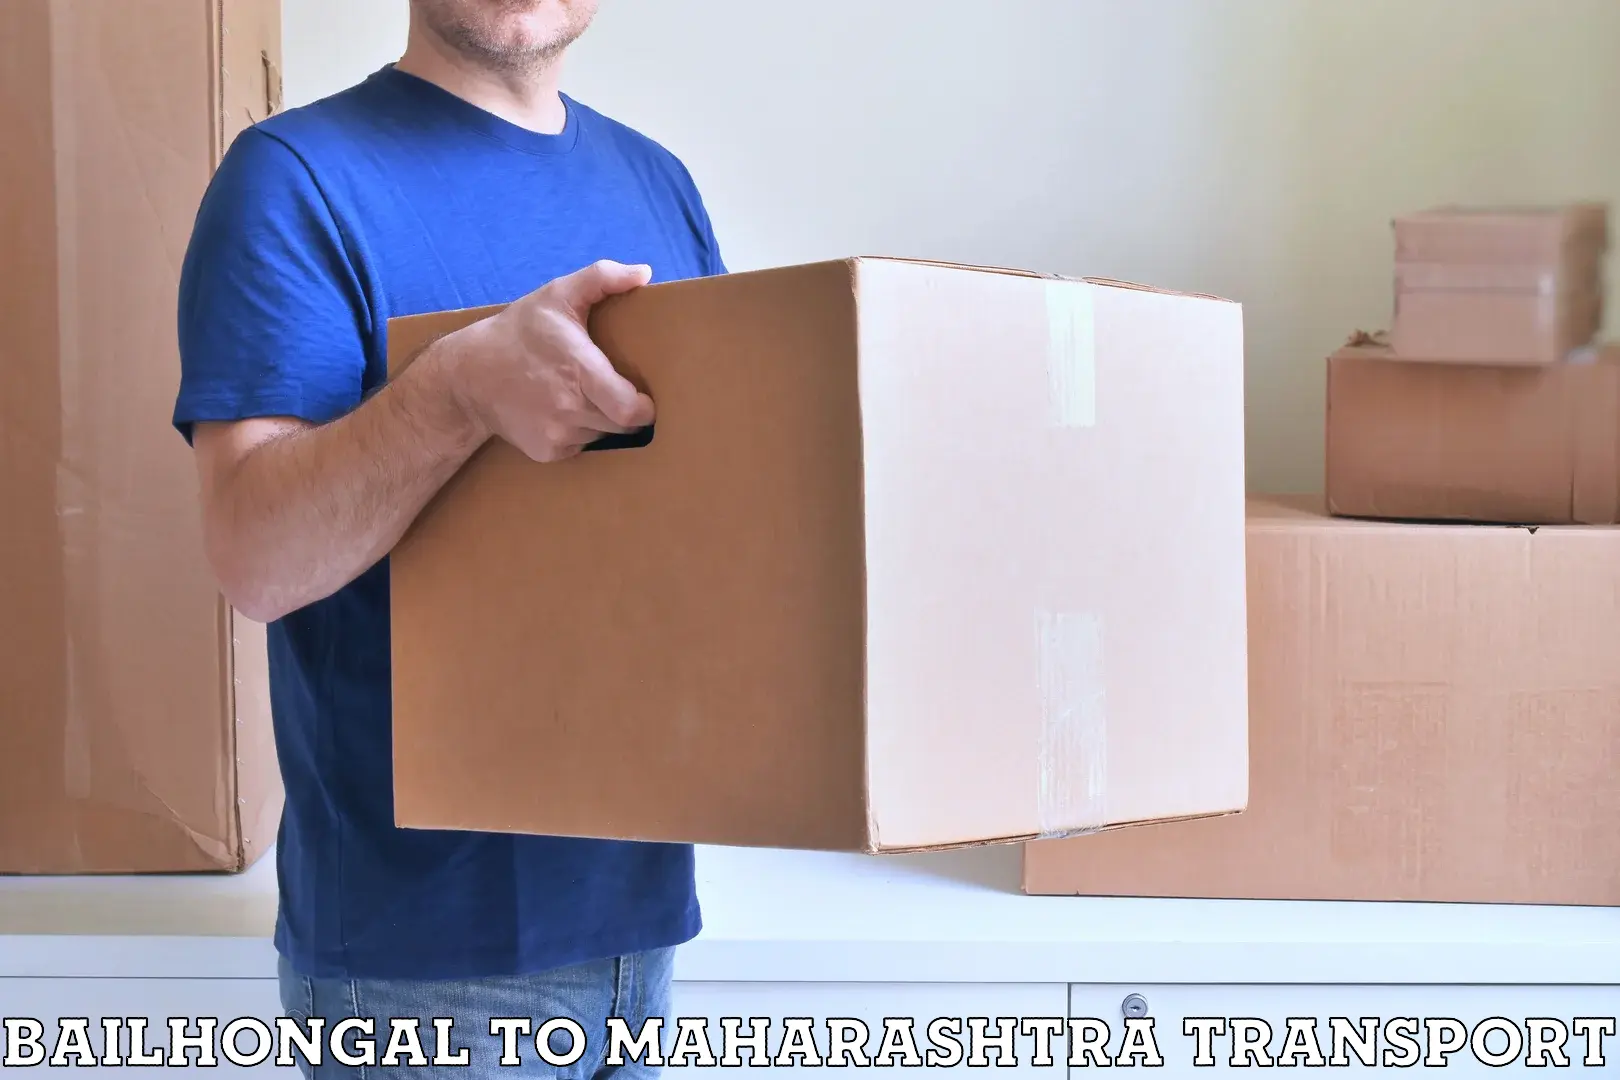 Furniture transport service Bailhongal to Shindkheda